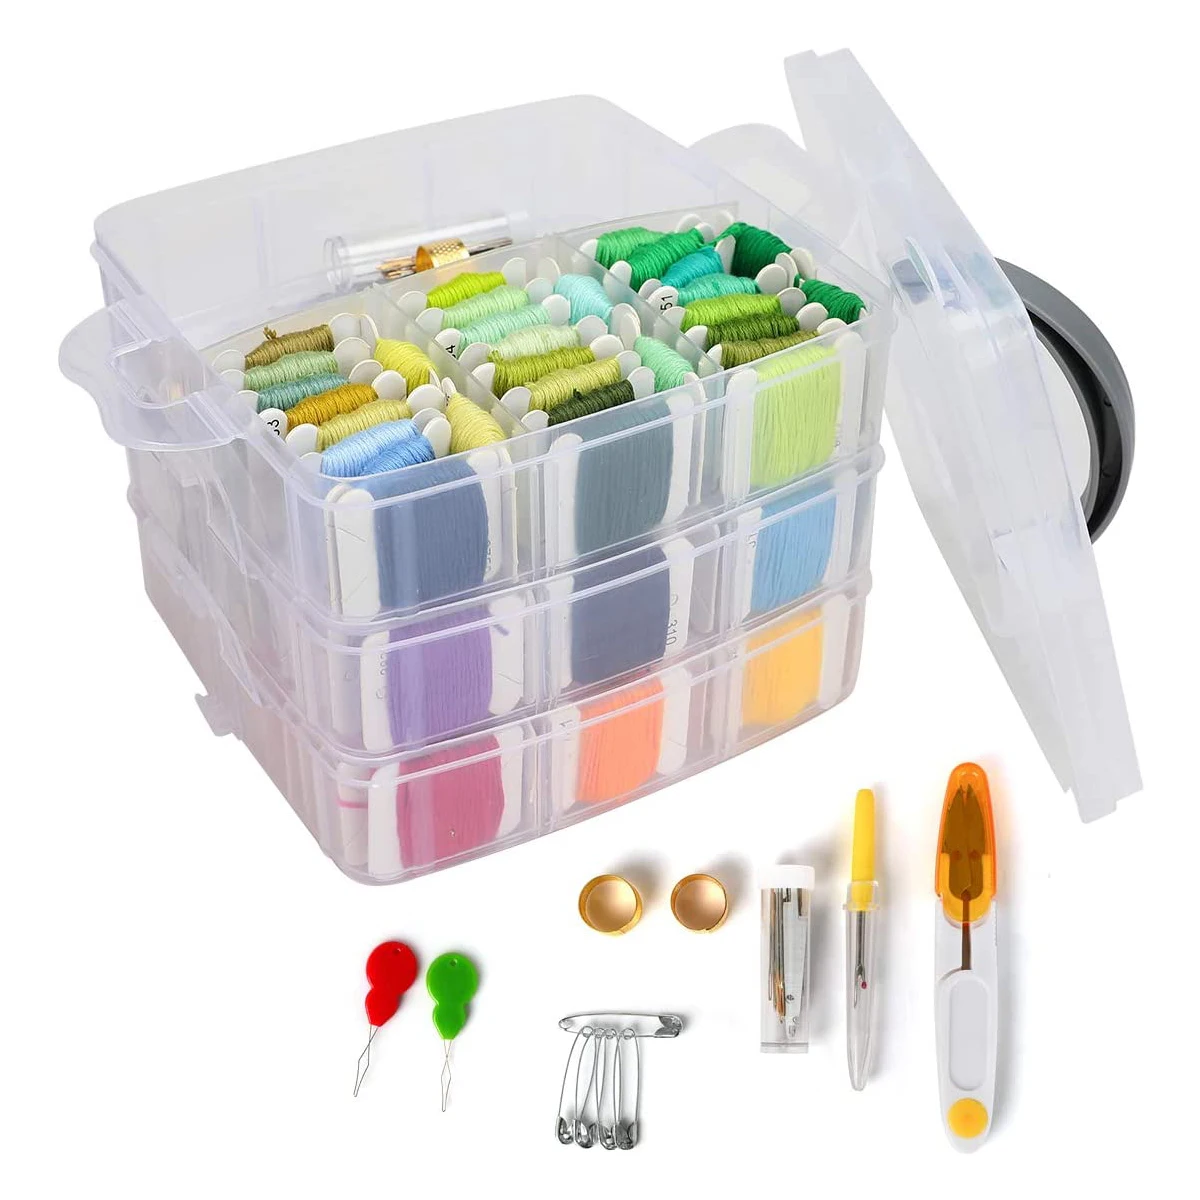 

Набор для вышивания, набор нитей включает 150 цветов ниток с 3-уровневой прозрачной коробкой для хранения, инструменты для вышивки крестом LB88